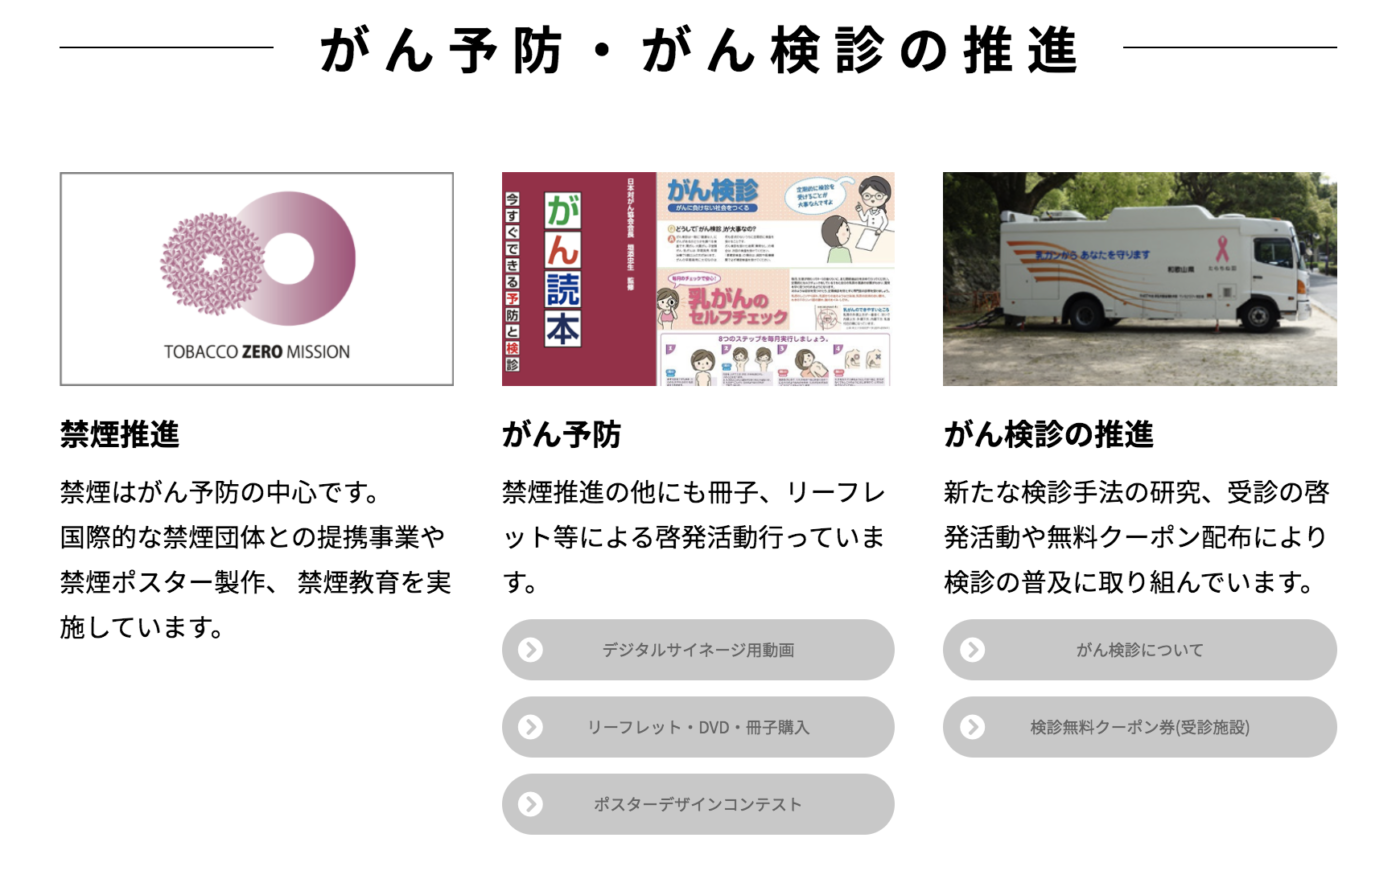 【社会貢献活動報告】公益財団法人日本対がん協会のがん制圧基金活動のサポートを開始